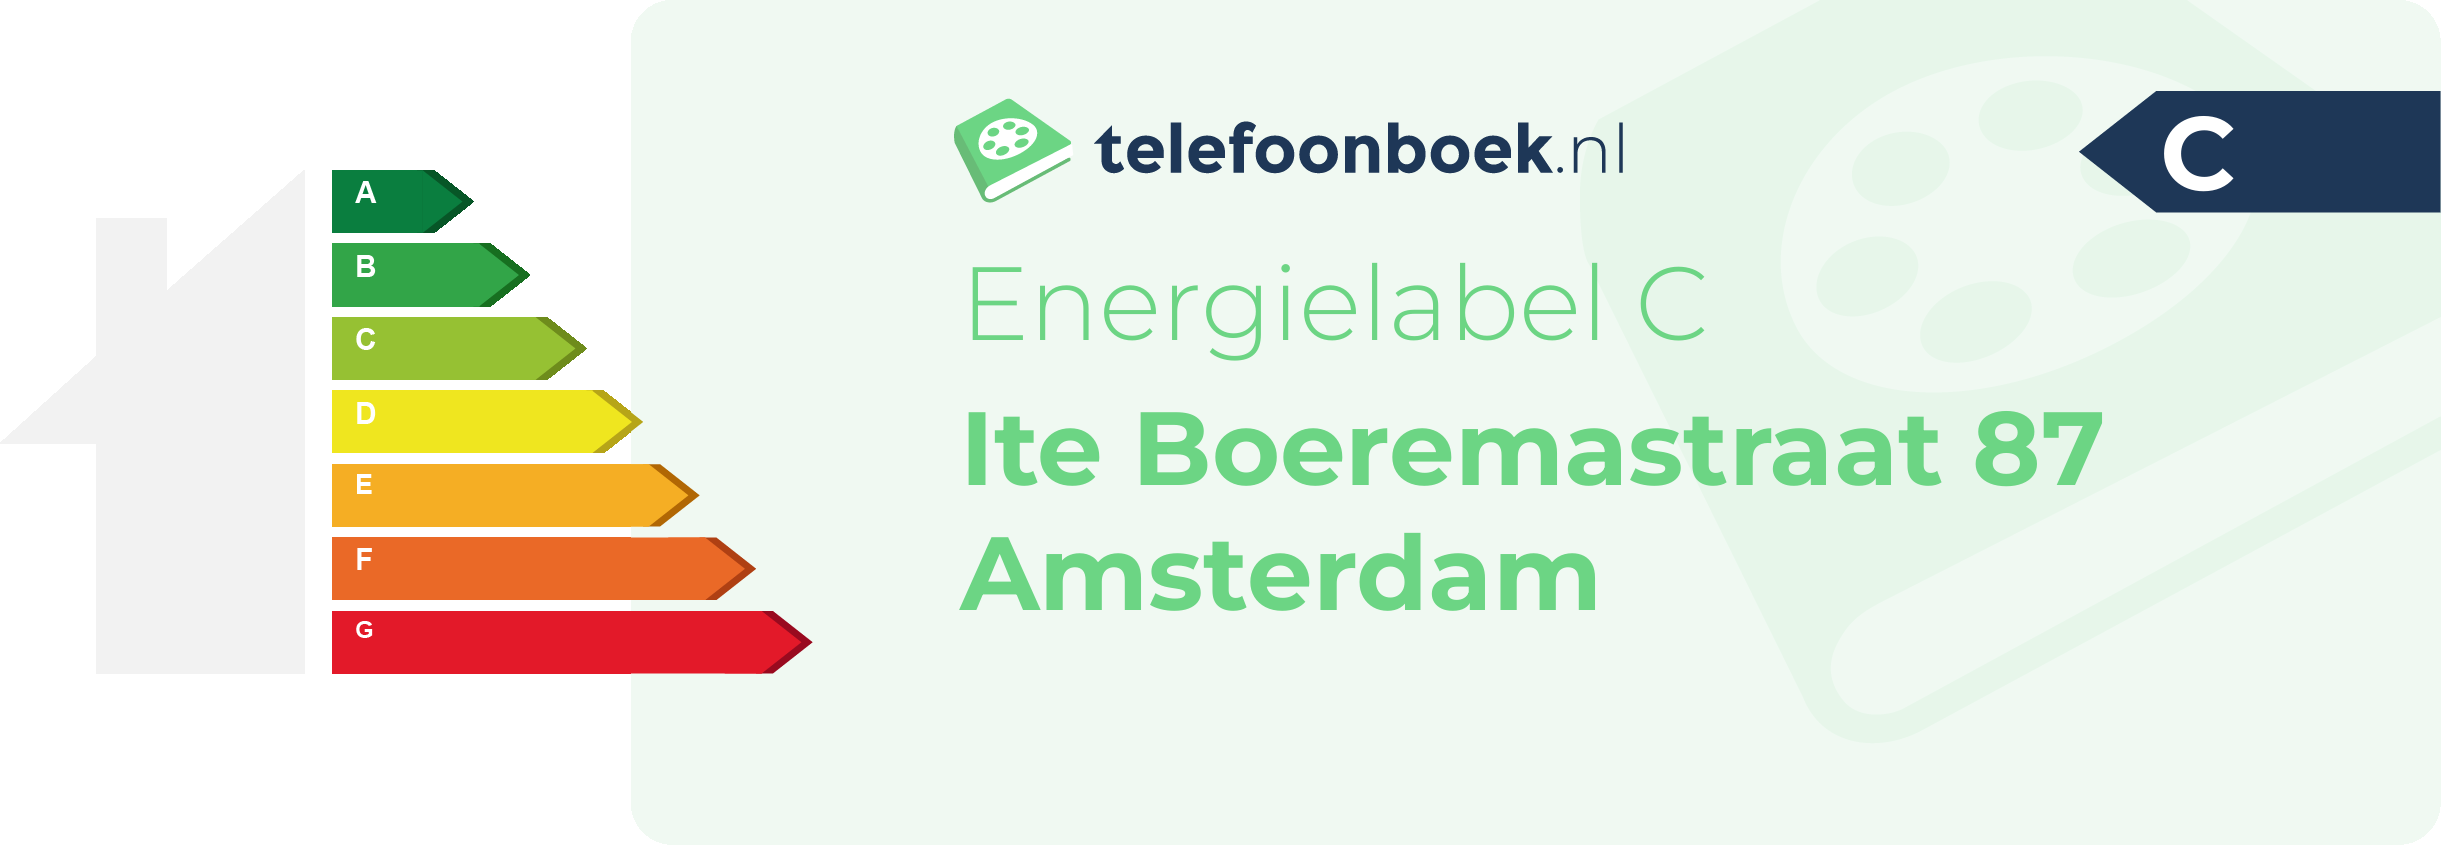 Energielabel Ite Boeremastraat 87 Amsterdam